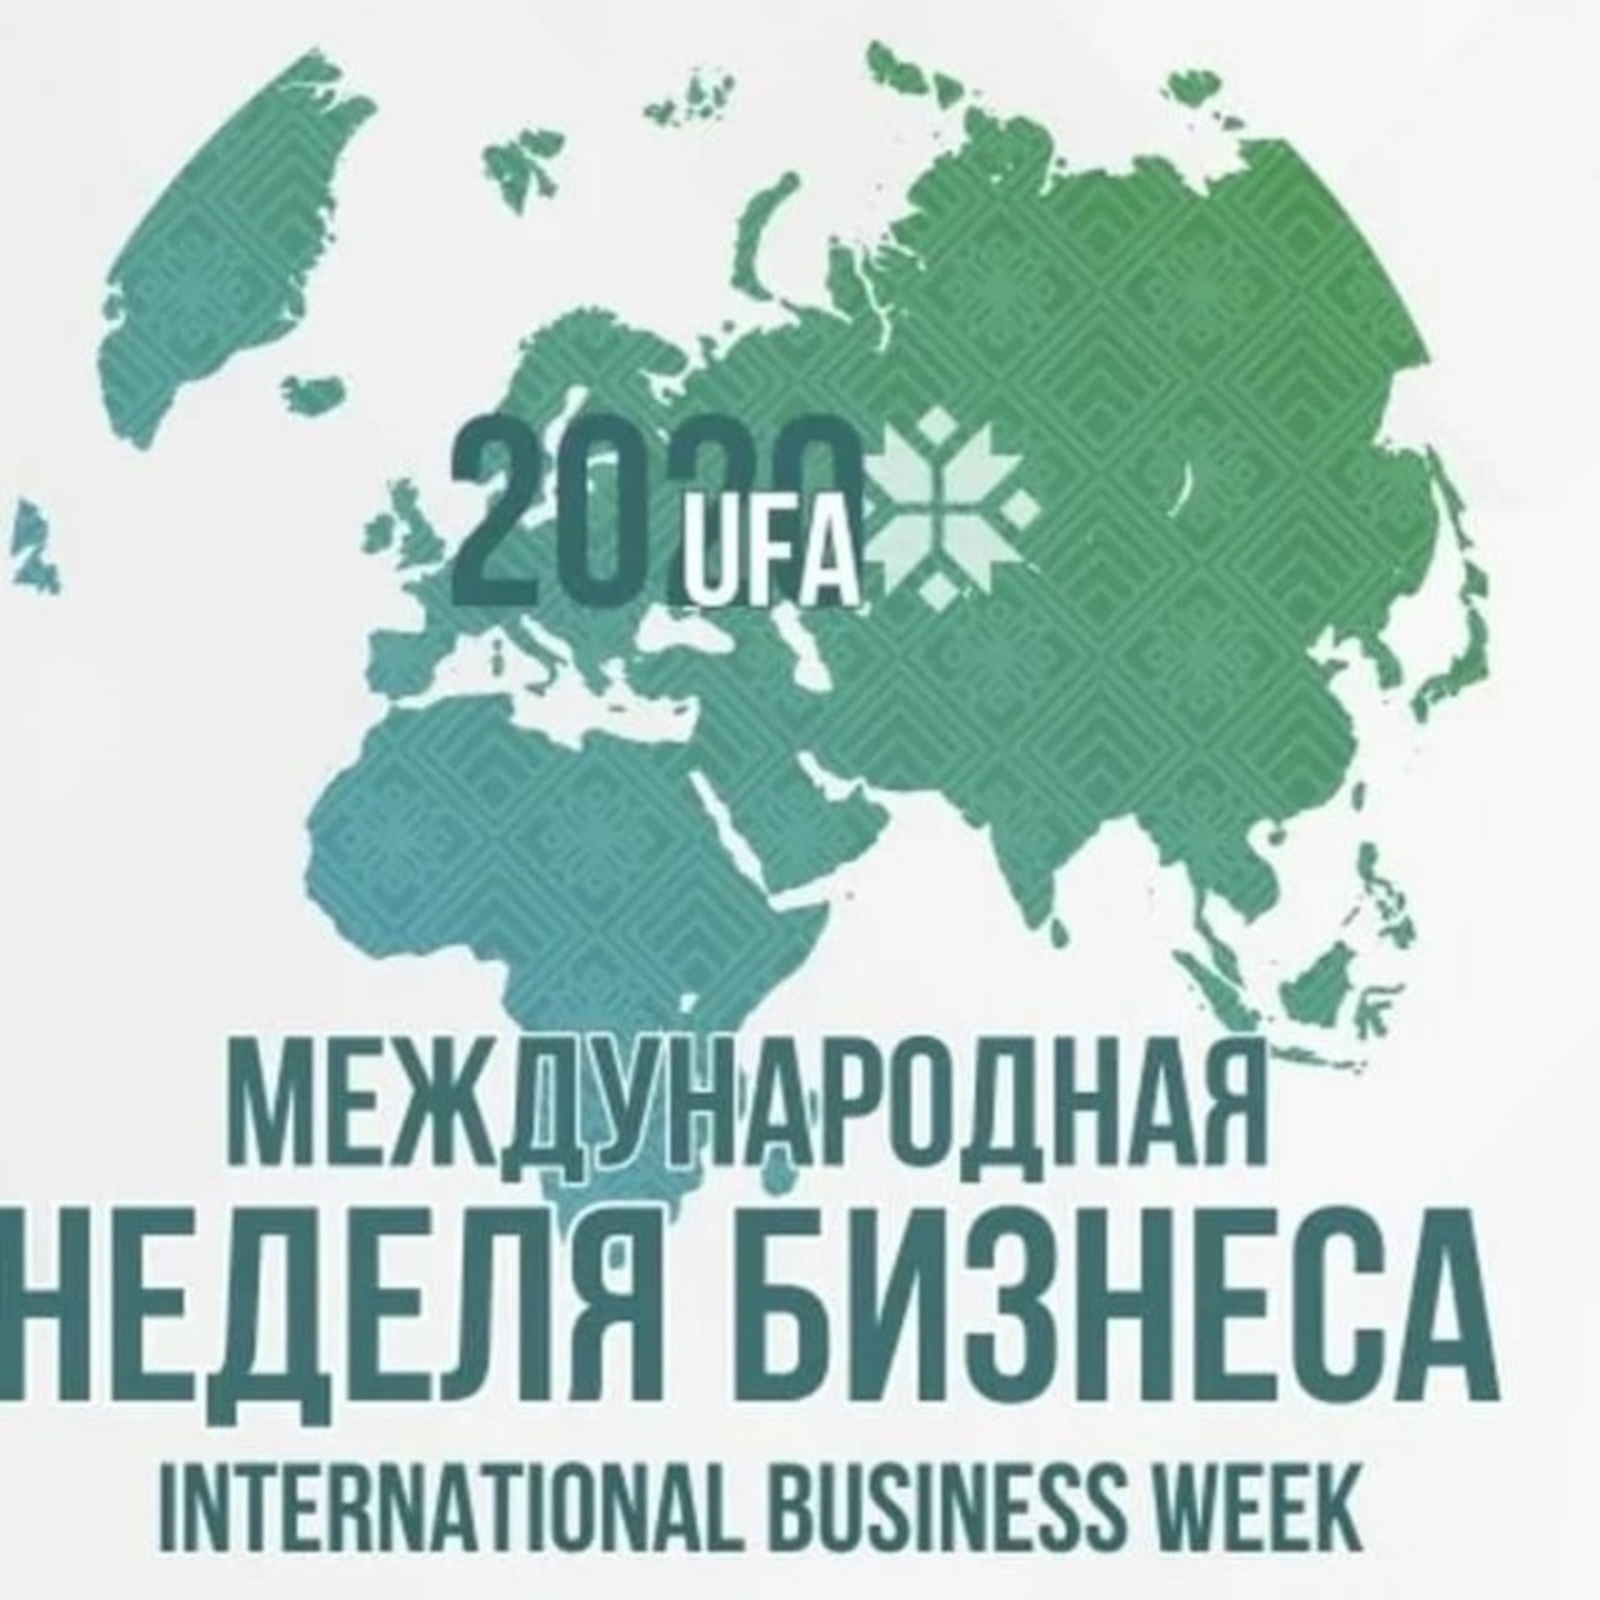 Экспортеры Башкирии на «Международной неделе бизнеса» освоили интернет-торговлю